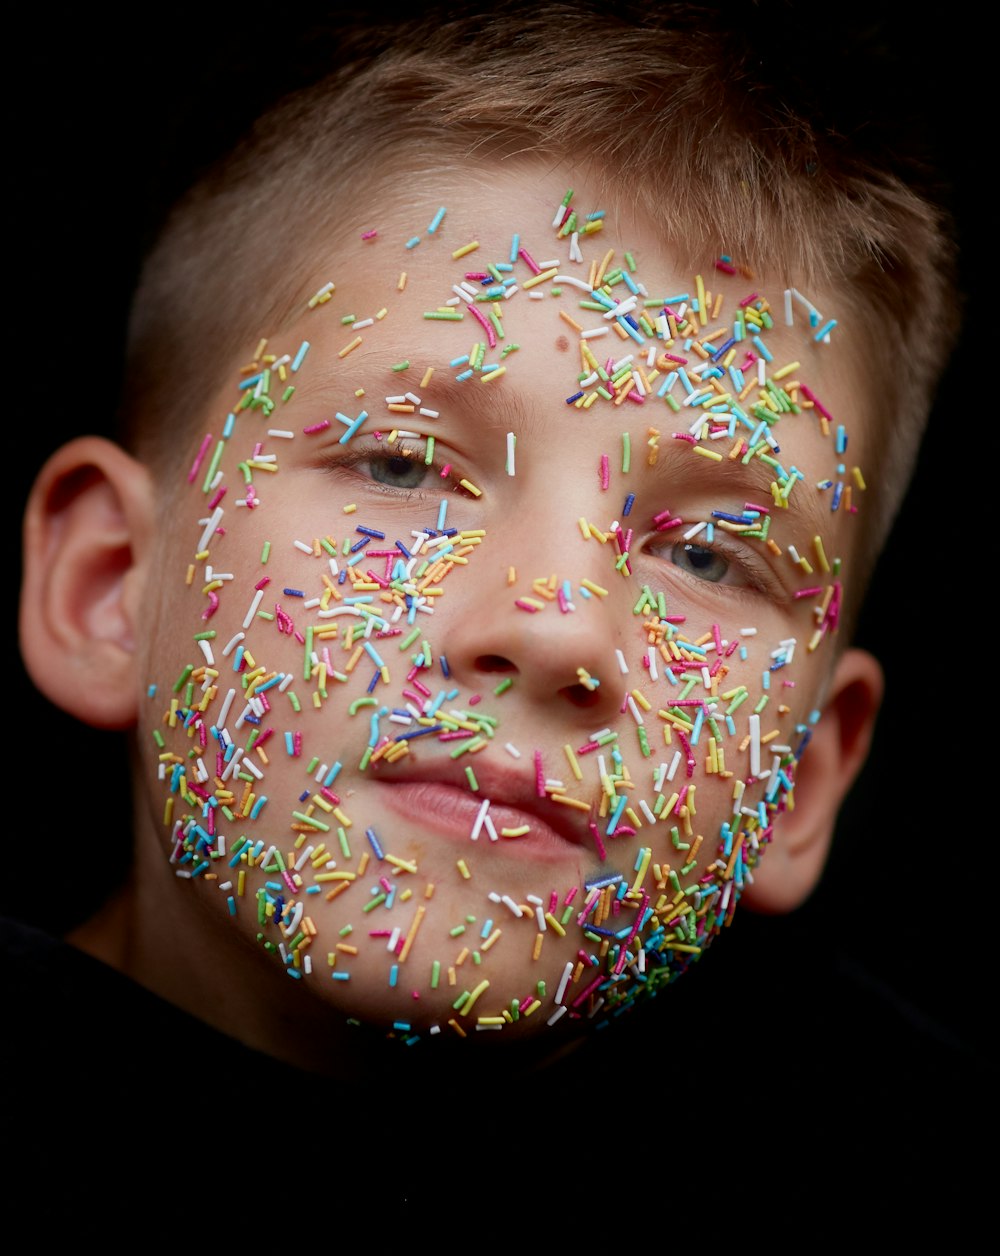 Caramelos de aspersores de colores variados en la cara del niño